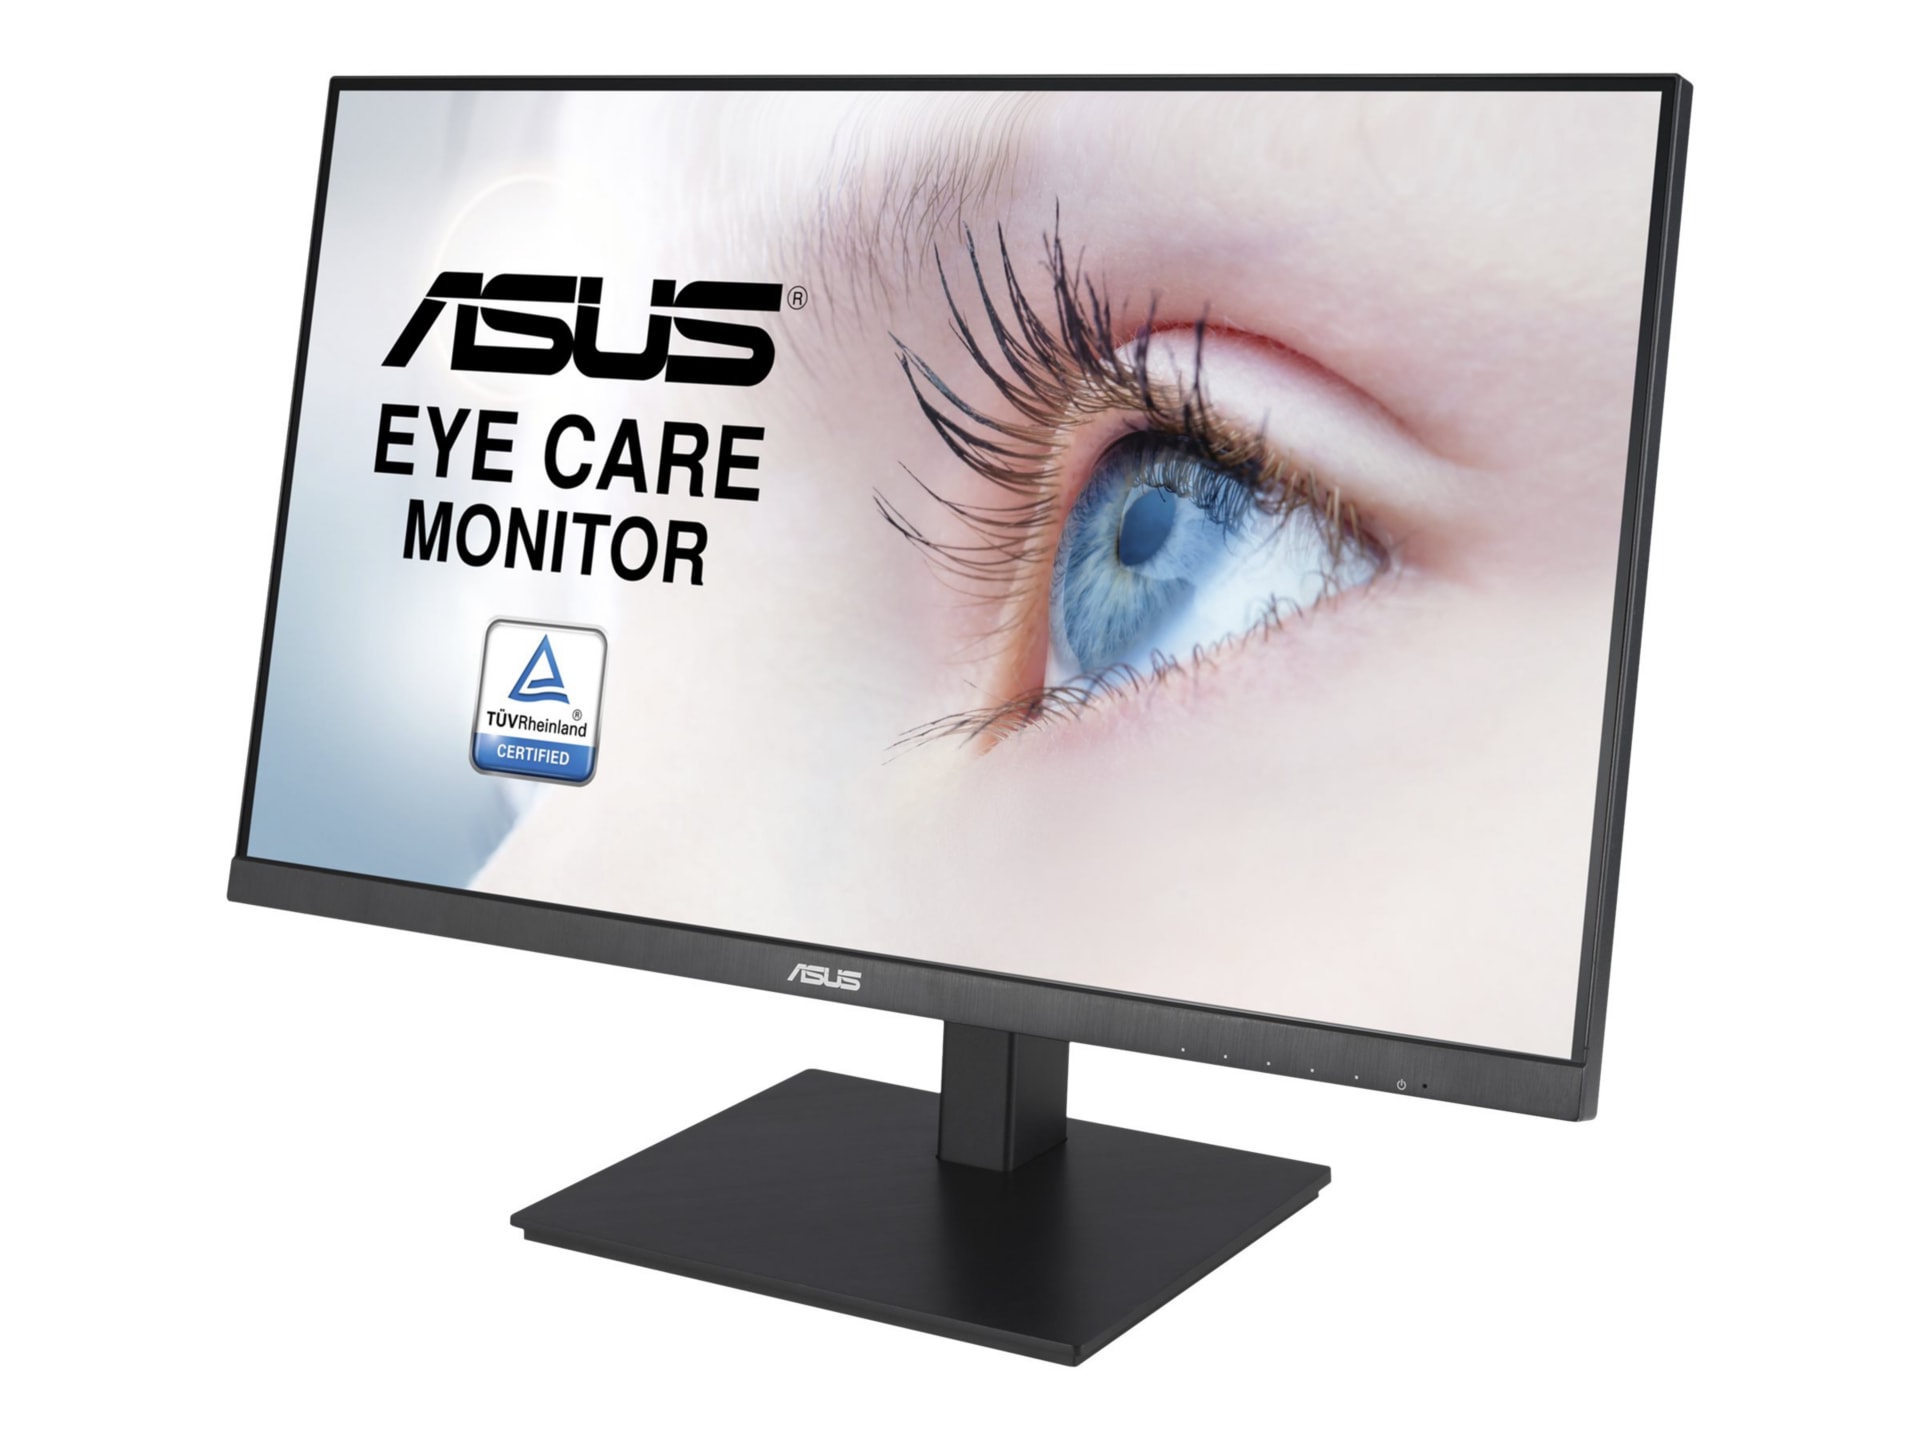 ASUS VA27DQSB - LED - Full HD (1080p) 27" - VA27DQSB - Computer Monitors - CDW.com